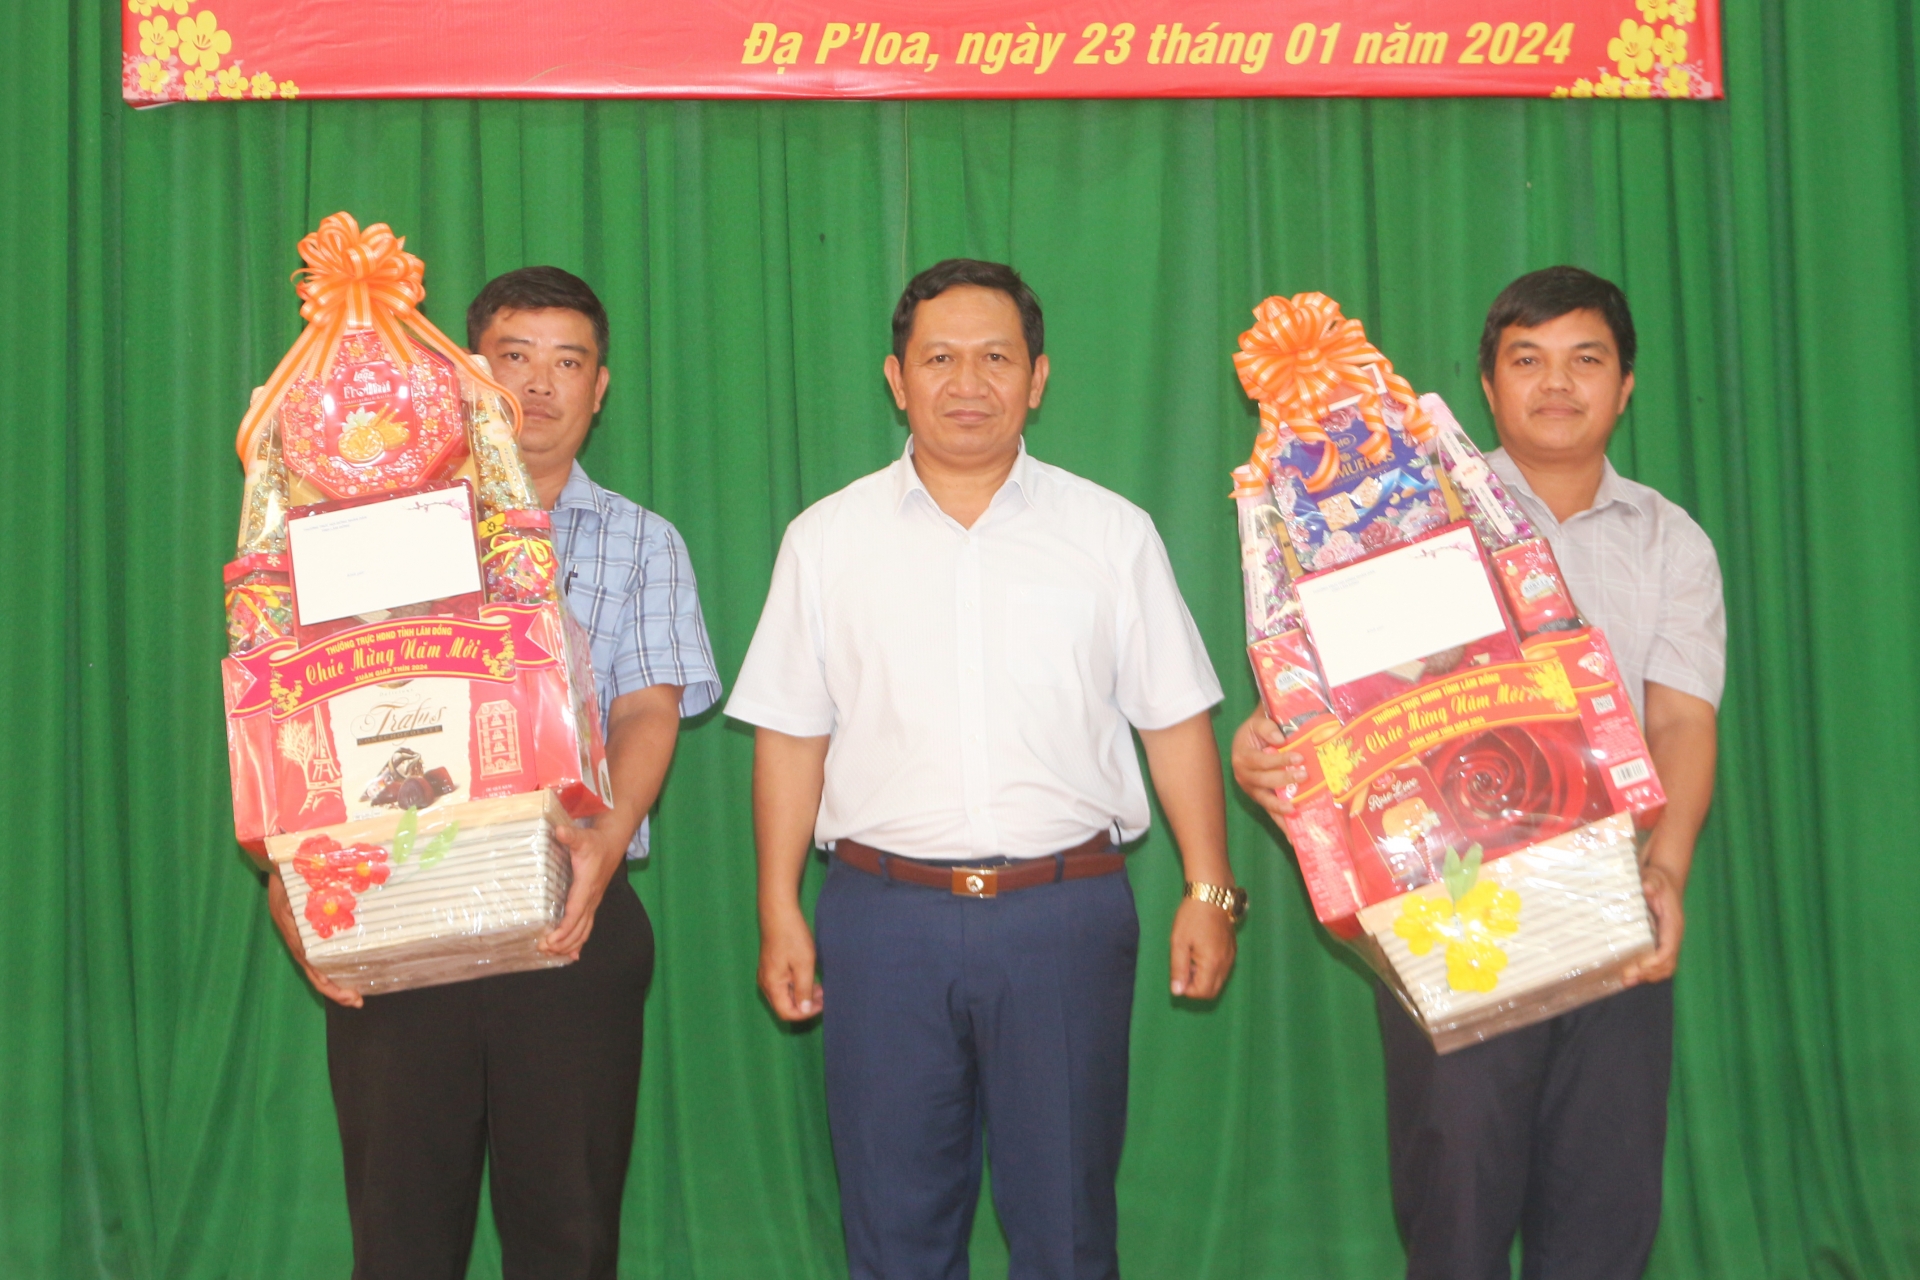 Đồng chí K’ Mák – Uỷ viên BTV Tỉnh ủy, Phó Chủ tịch HĐND tỉnh tặng quà cho chính quyền địa phương xã Đạ Ploa, Đoàn Kết 